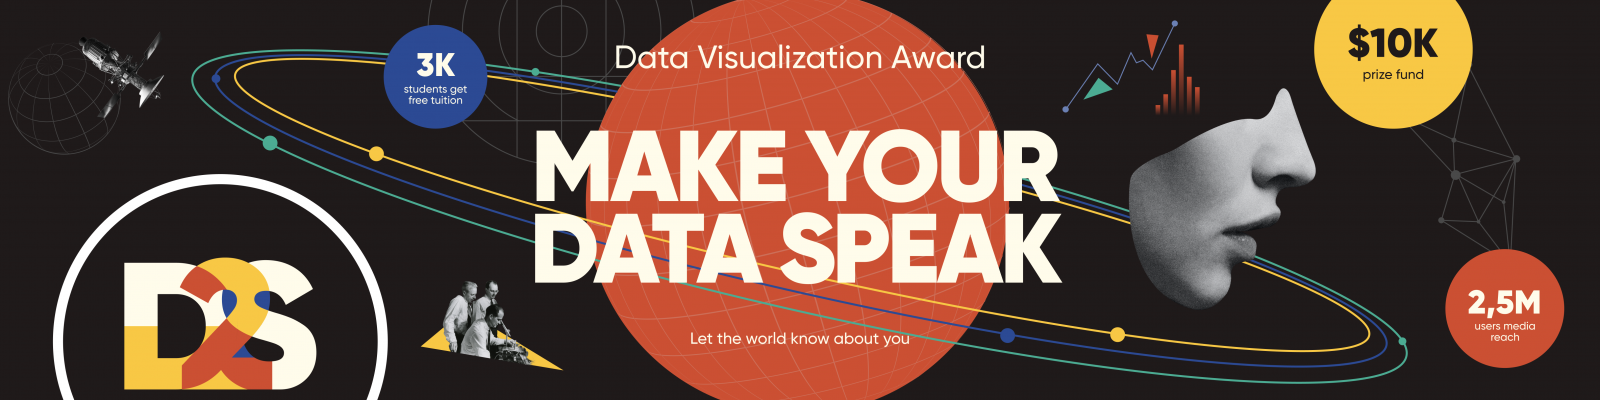 Make your data speak